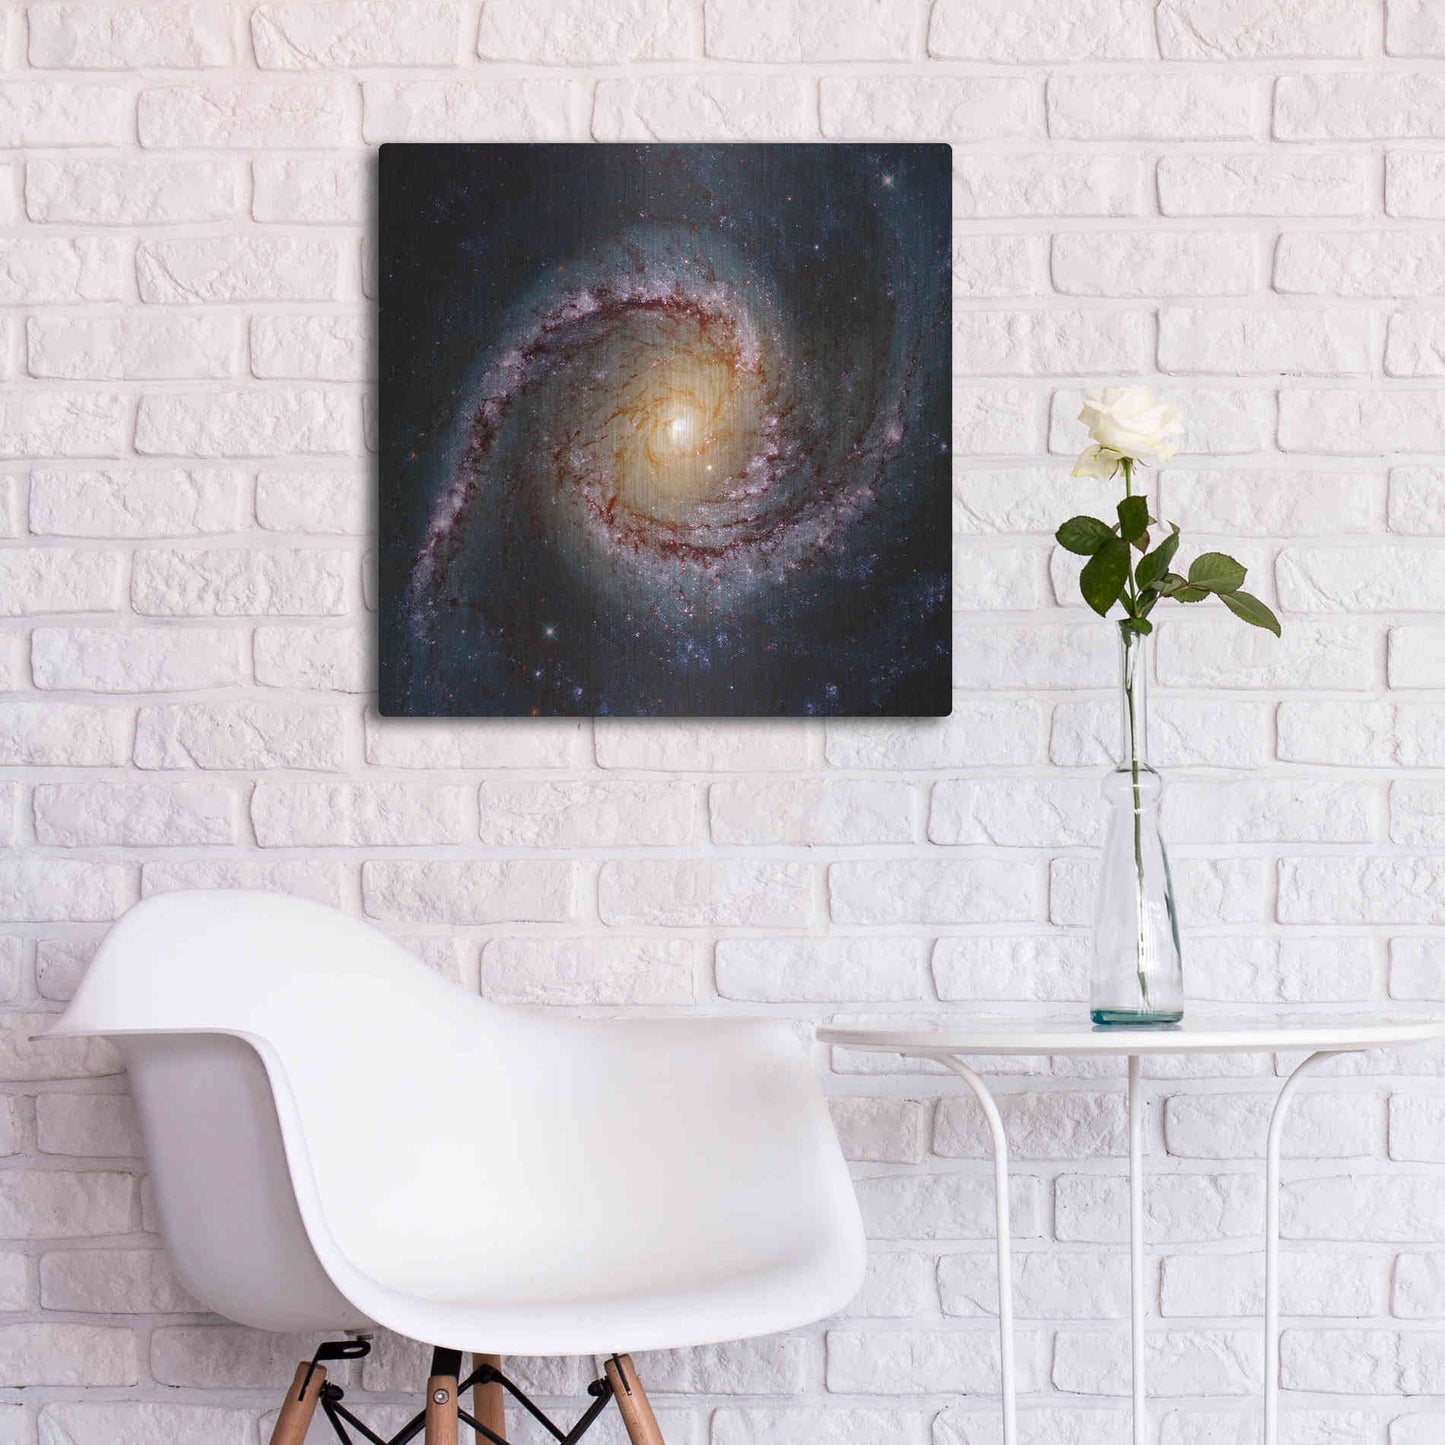 Luxe Metal Art 'Grand Swirls' Hubble Space Telescope, Metal Wall Art,24x24